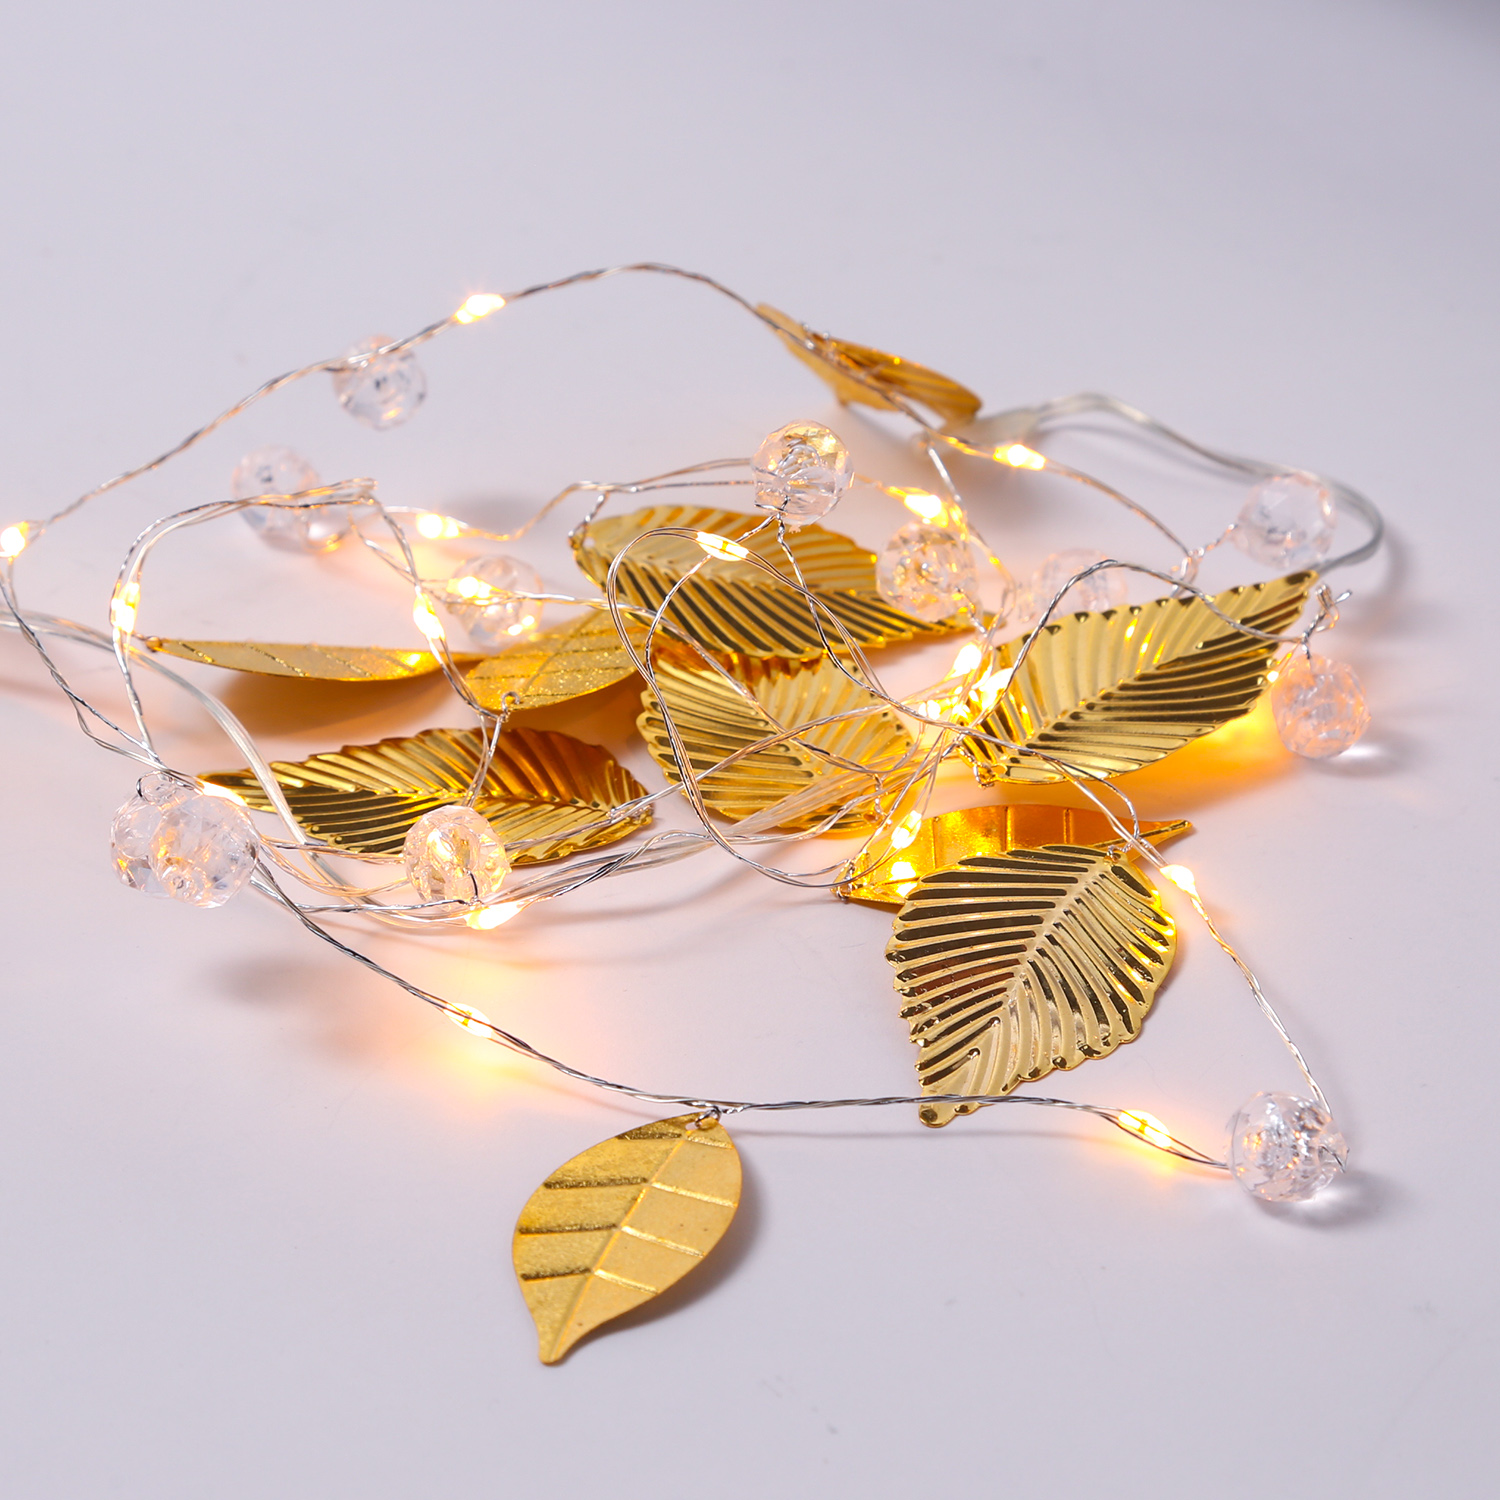 LED Drahtlichterkette mit goldenen Blättern und Perlen - 20 warmweiße LED - Batterie - L: 1,37m